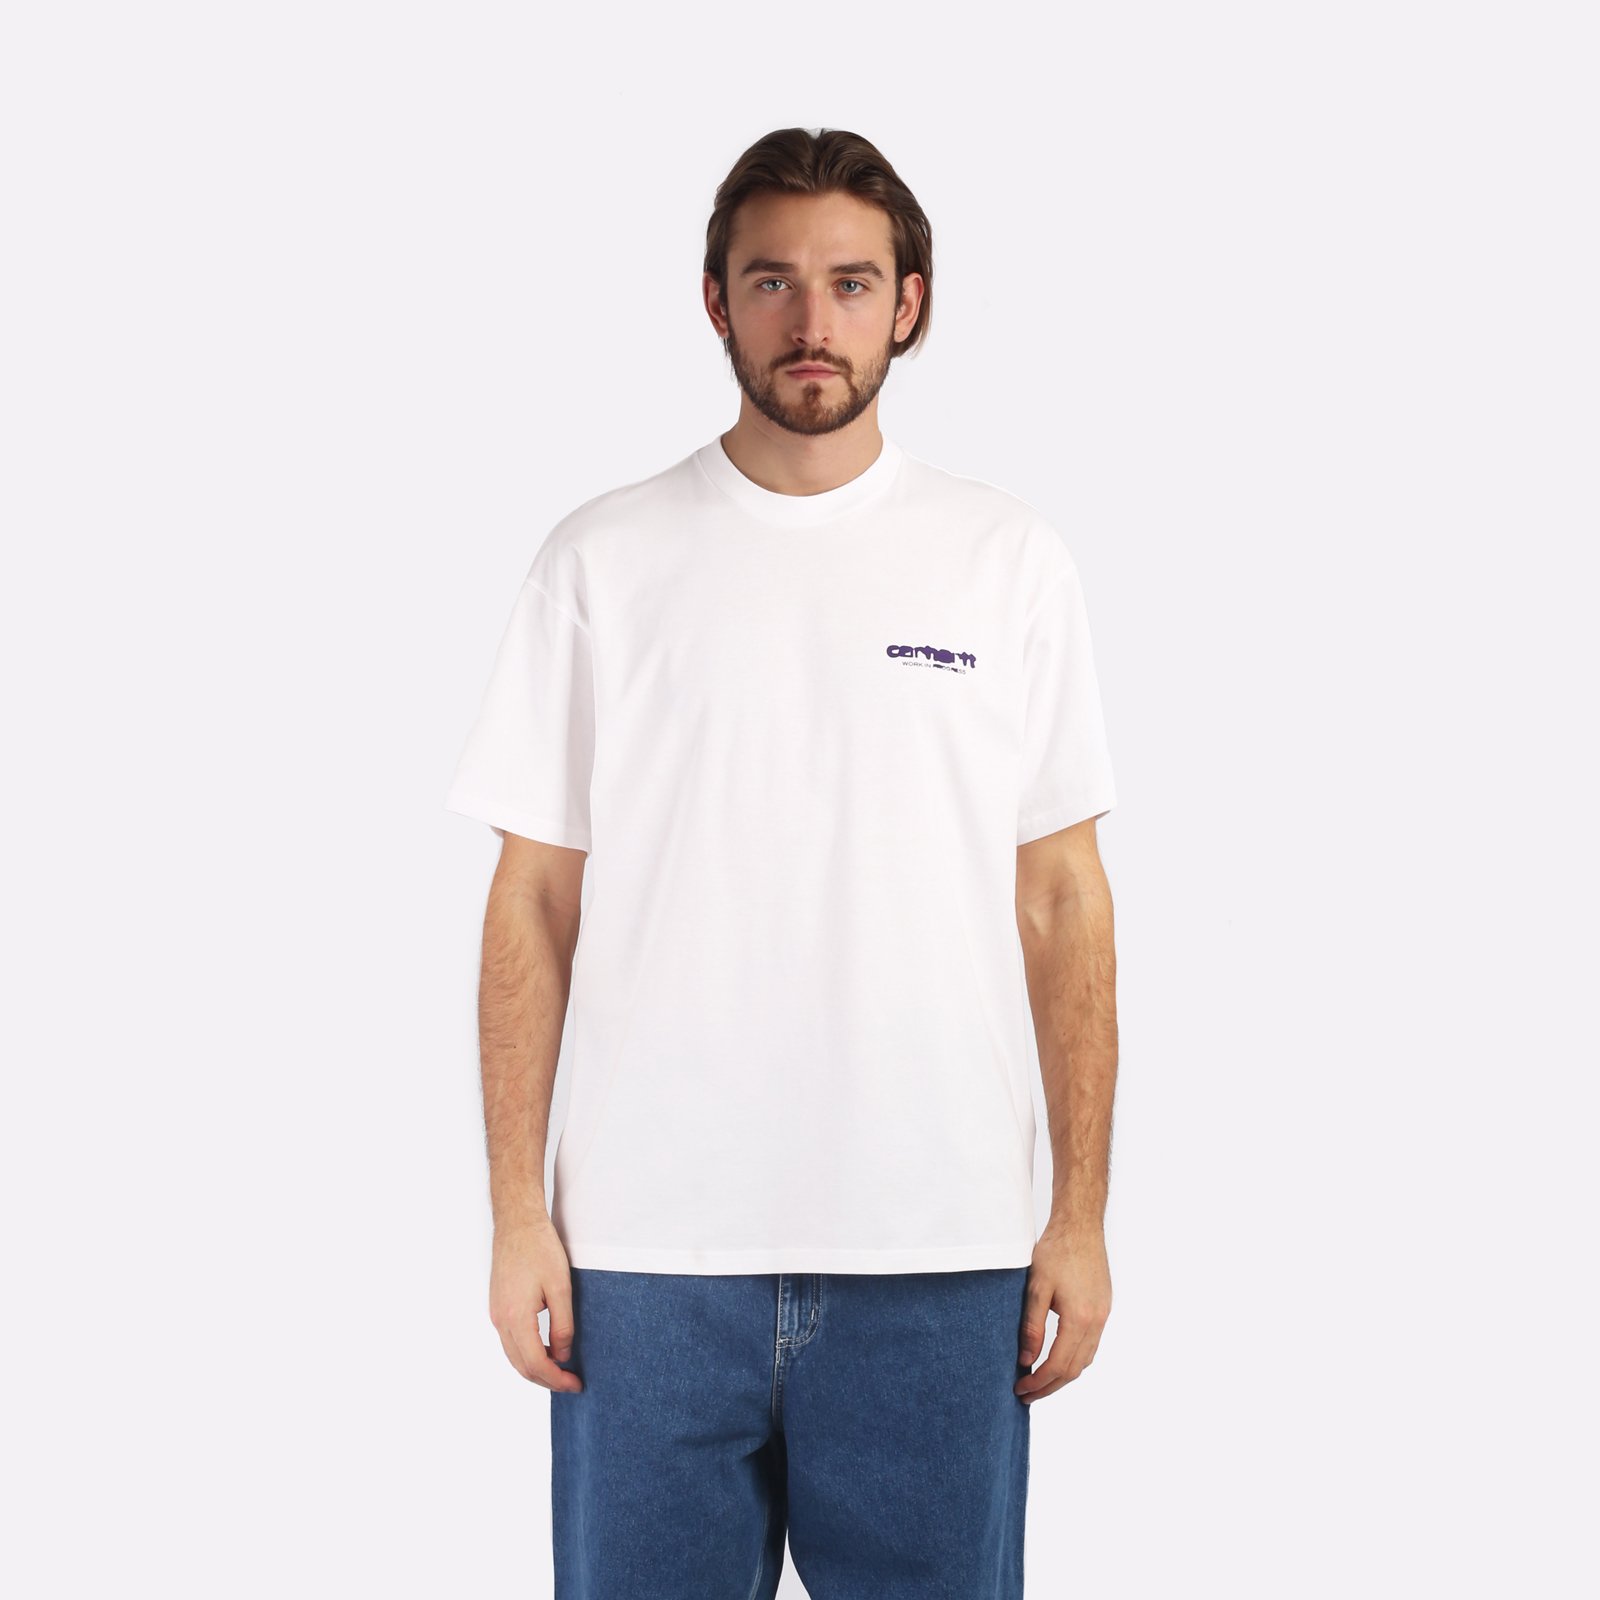 мужская футболка Carhartt WIP S/S Ink Bleed T-Shirt  (I032878-white/tyrian)  - цена, описание, фото 1